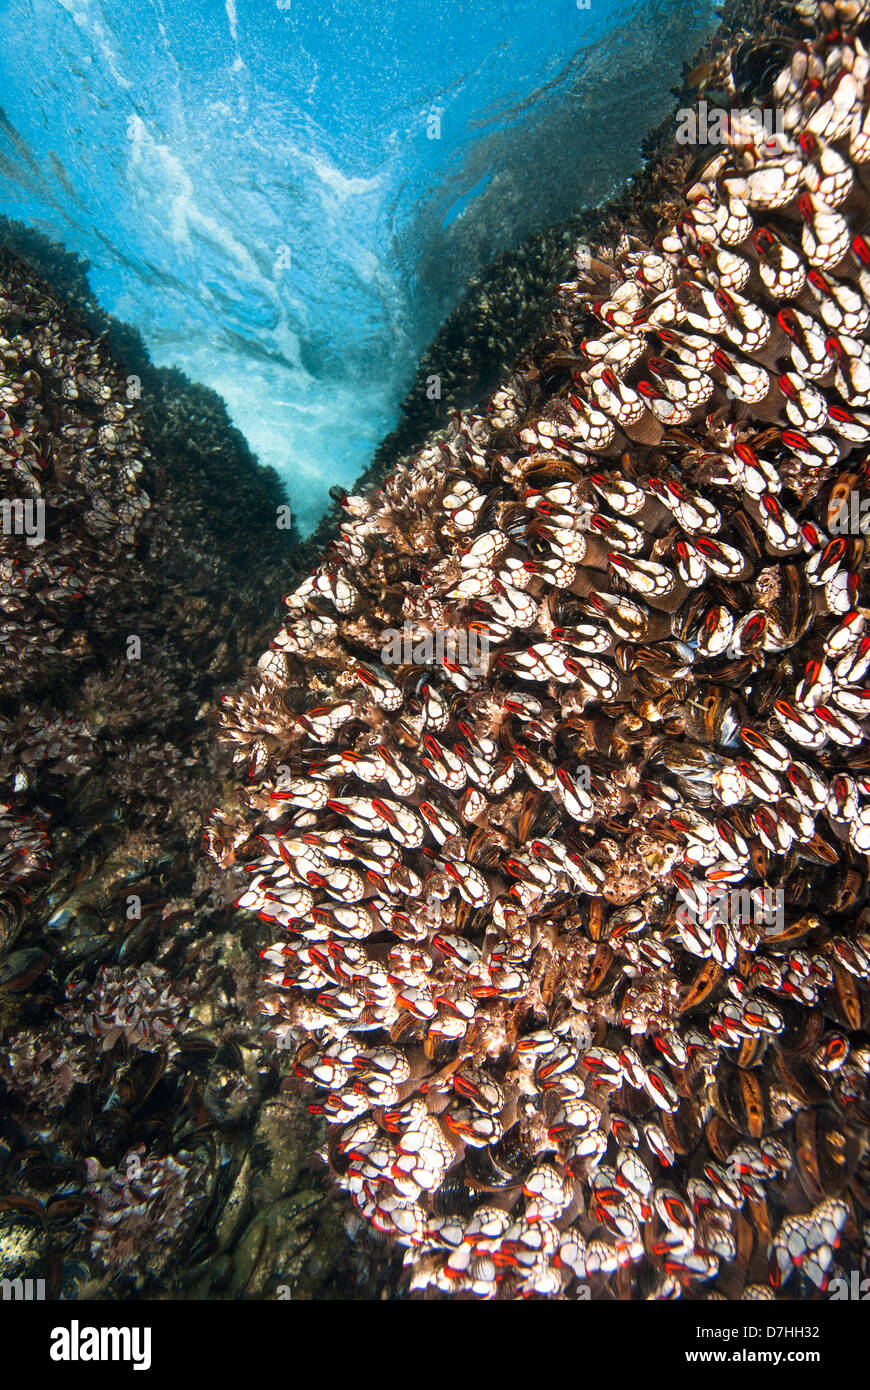 Una scena subacquea di sharp a collo di cigno cirripedi su una scogliera in acque poco profonde. Foto Stock